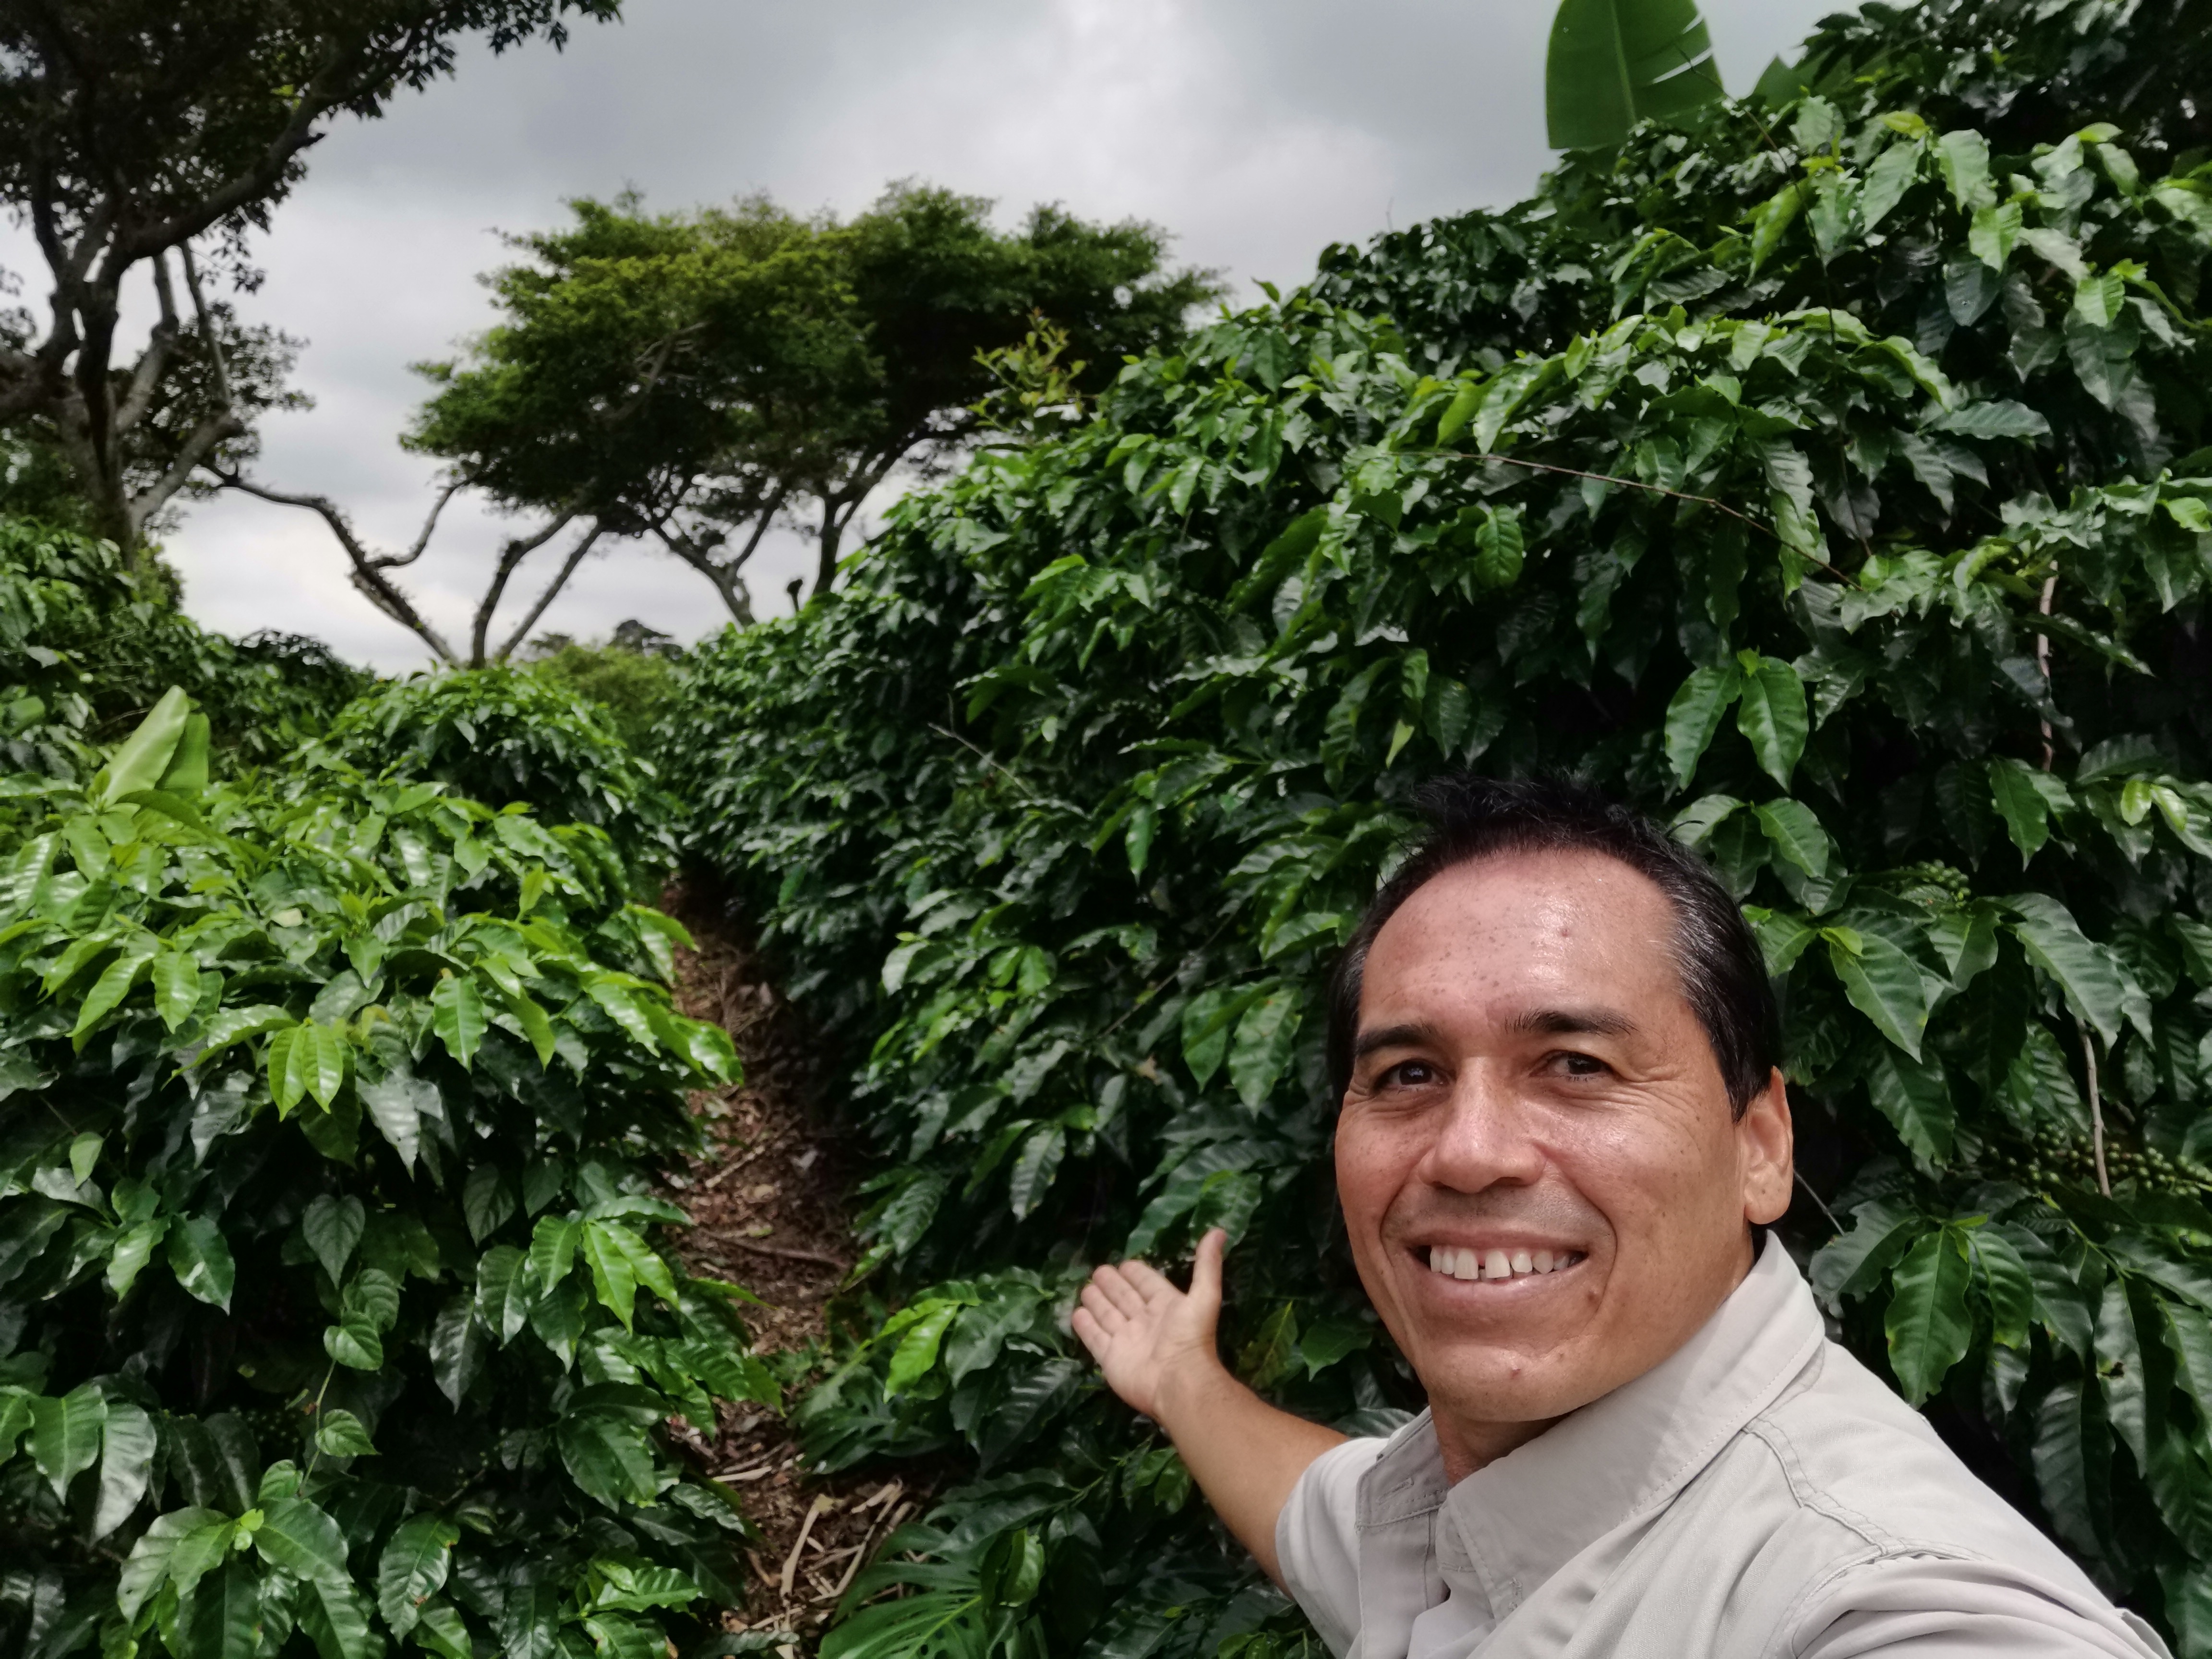 Alejandro Cano at coffee farm